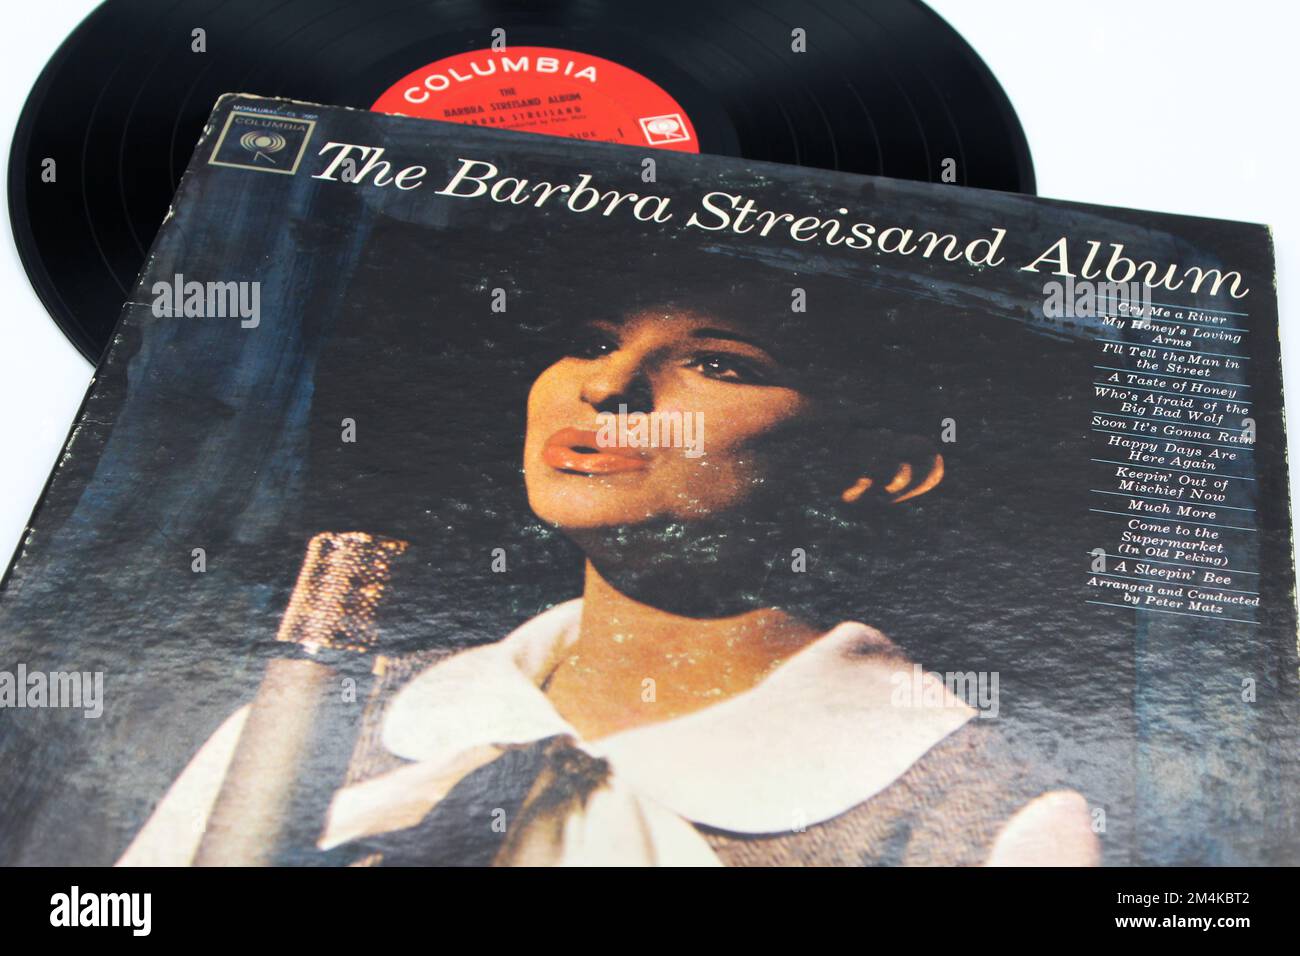 Pop artist, Barbra Streisand music album on vinyl record LP disc. Titled: The Barbra Streisand Album cover Stock Photo